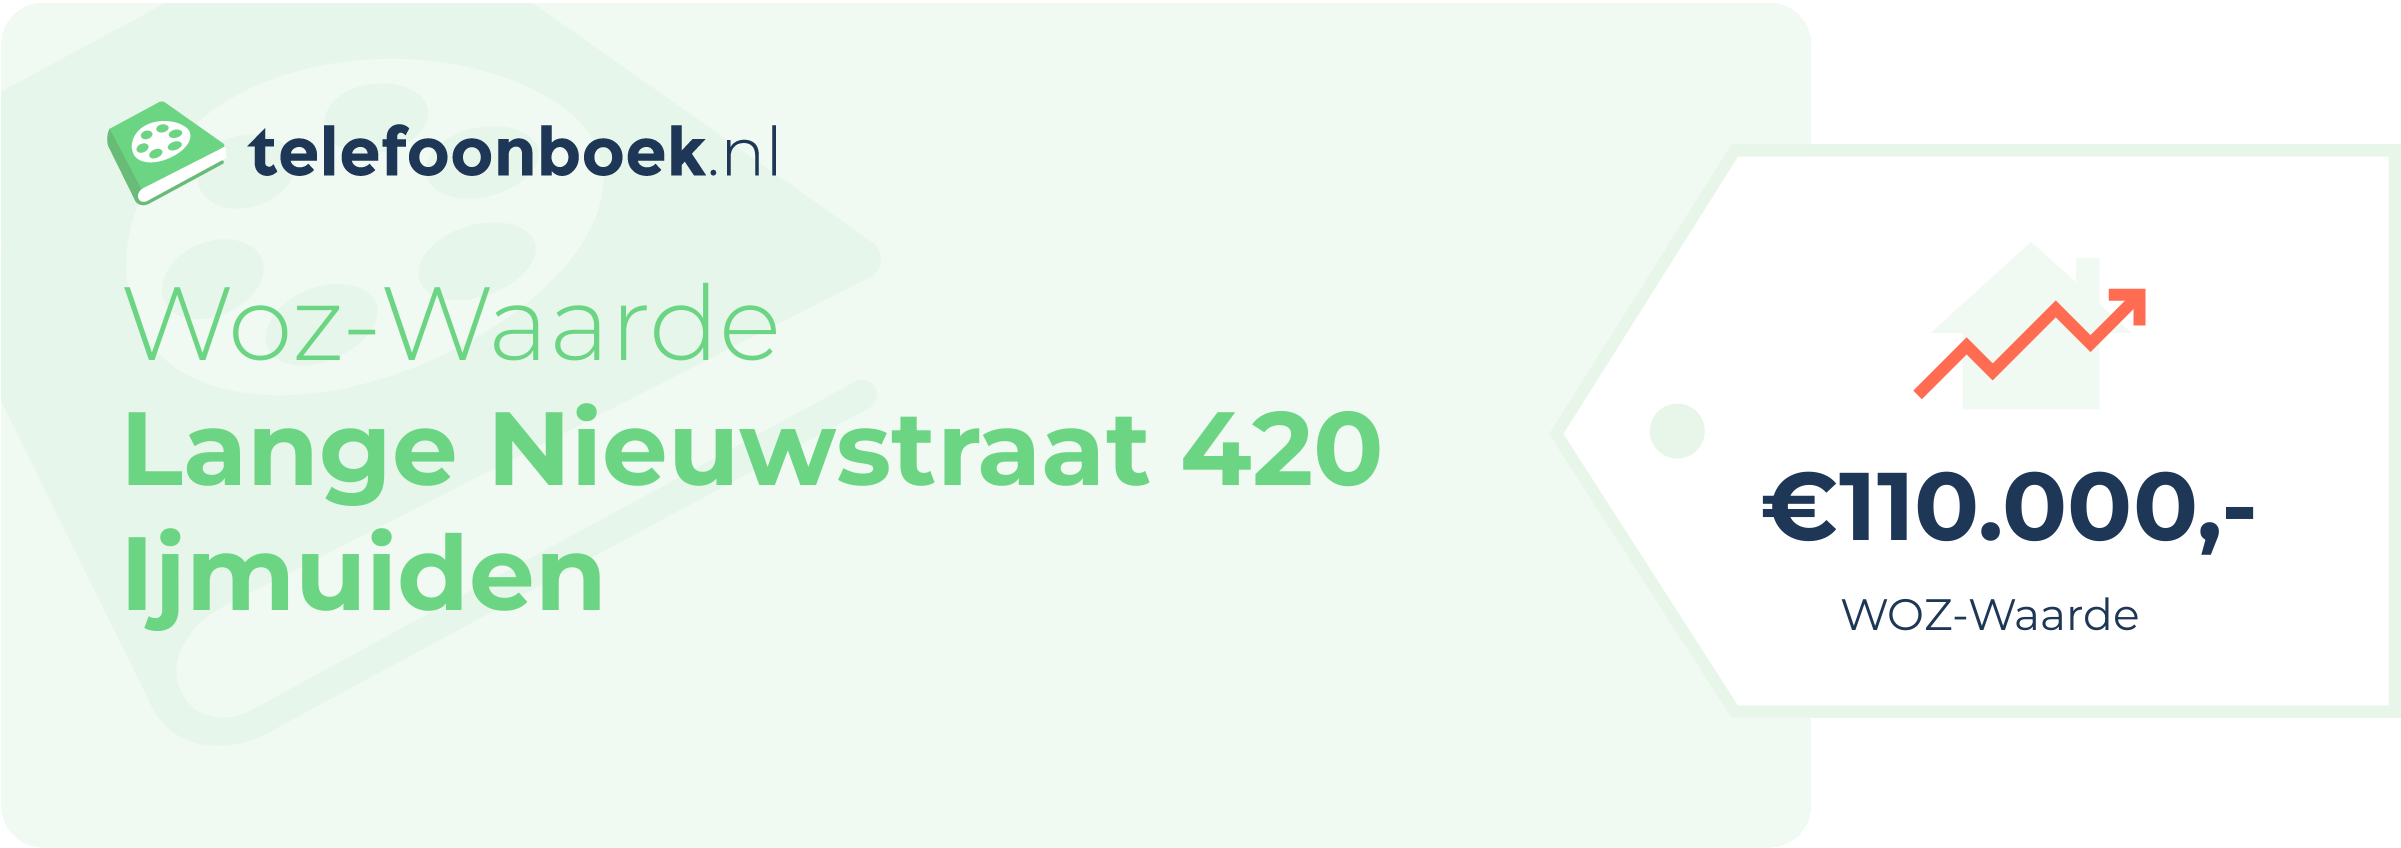 WOZ-waarde Lange Nieuwstraat 420 Ijmuiden